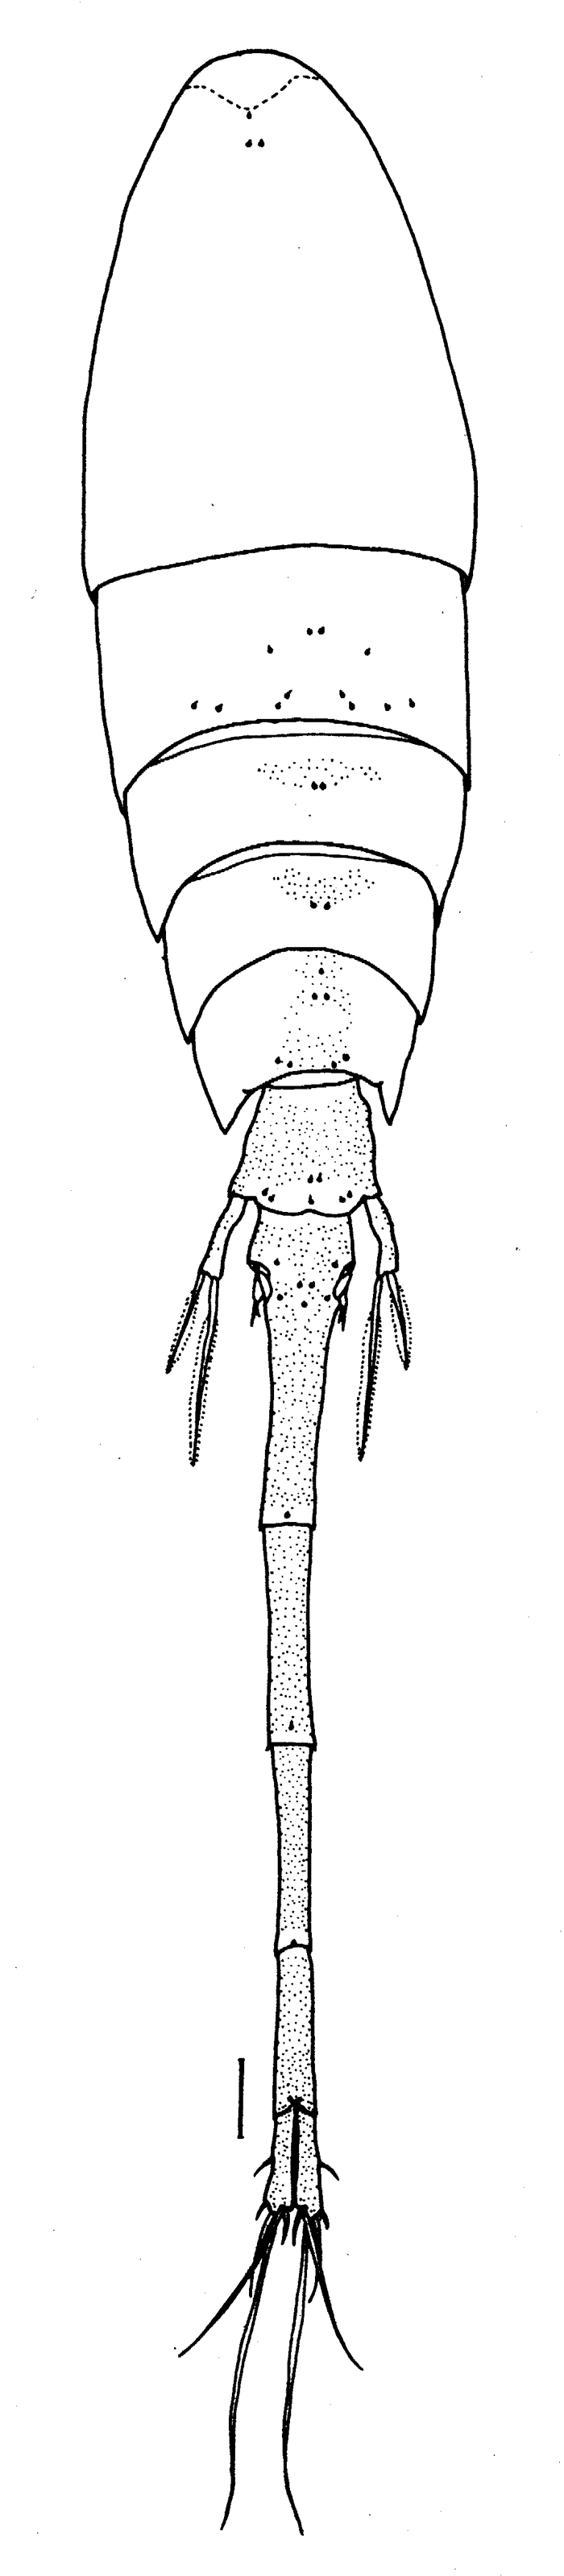 Espce Lubbockia wilsonae - Planche 3 de figures morphologiques